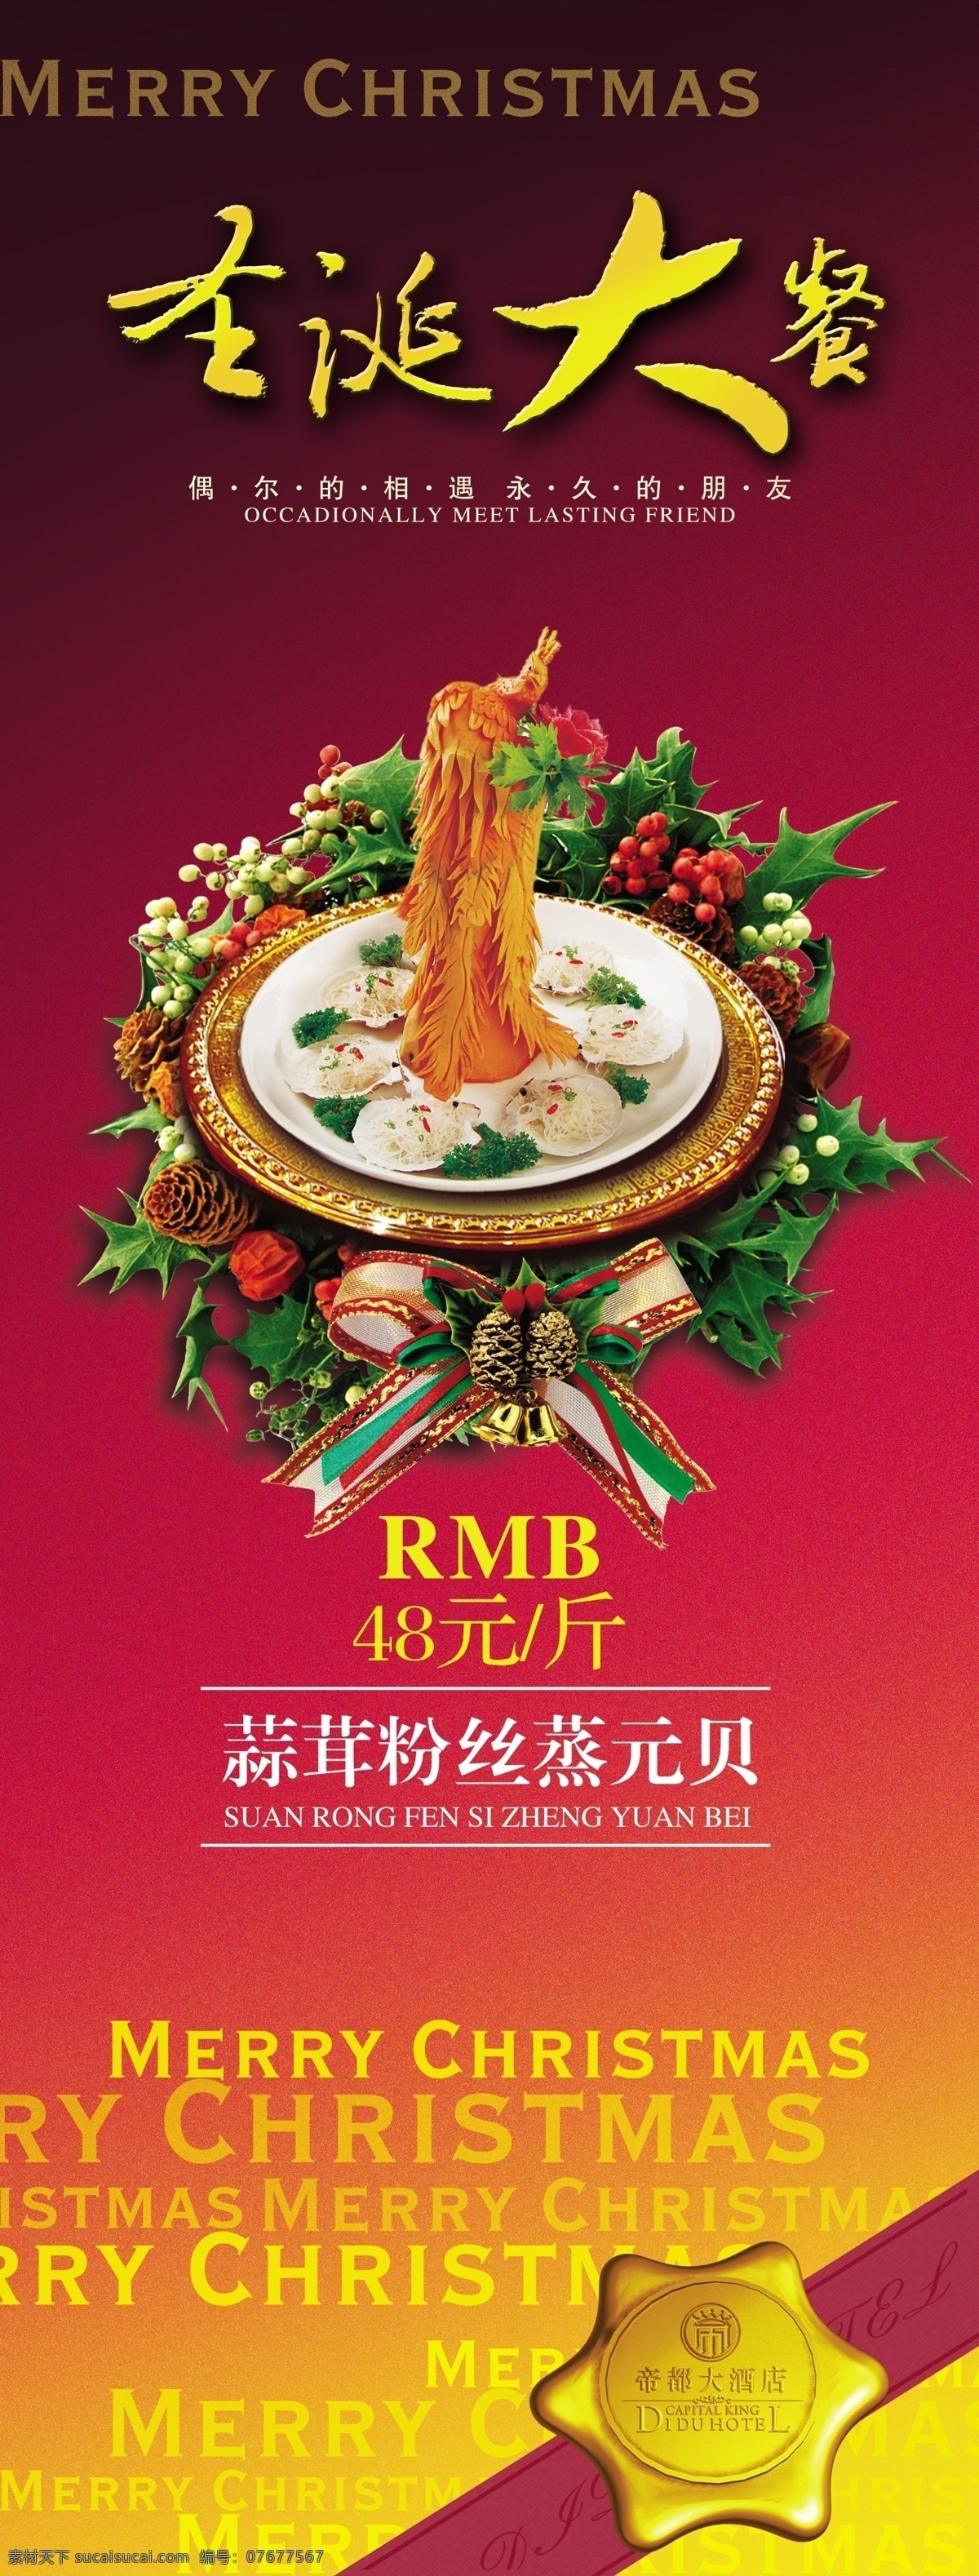 圣诞大餐海报 促销海报 饭店海报 红色背景 美食海报 圣诞素材